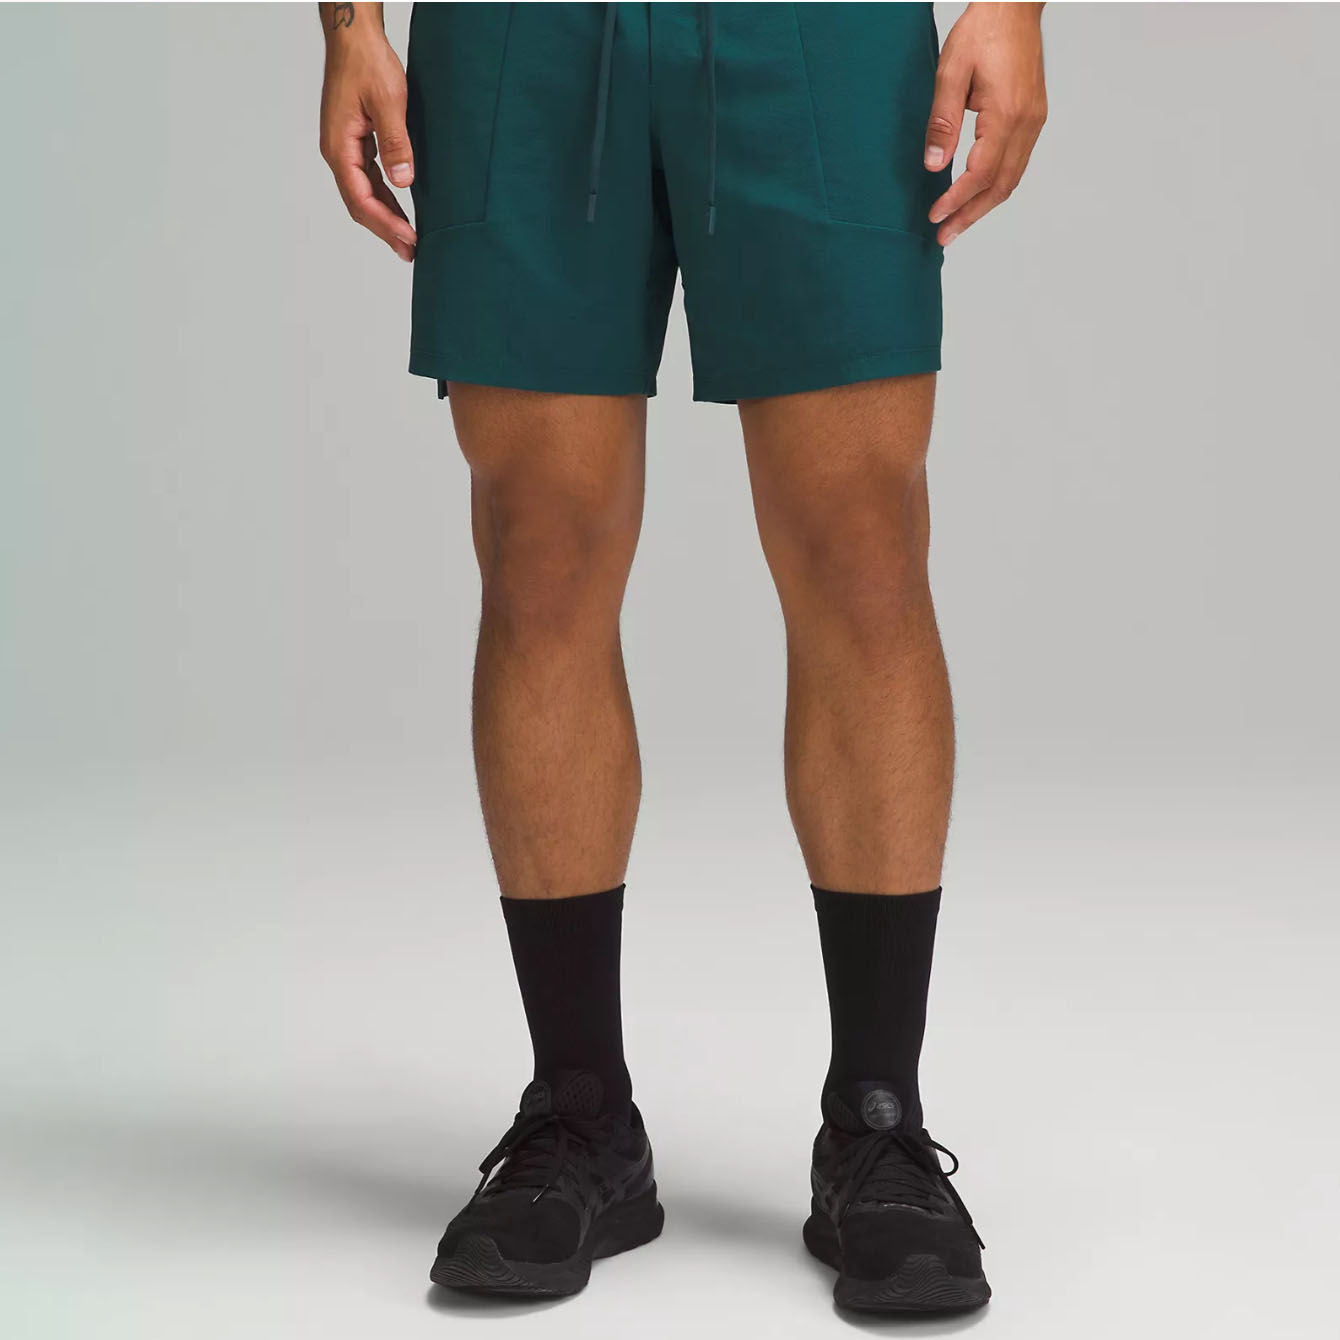 Men wearing dark green gym shorts